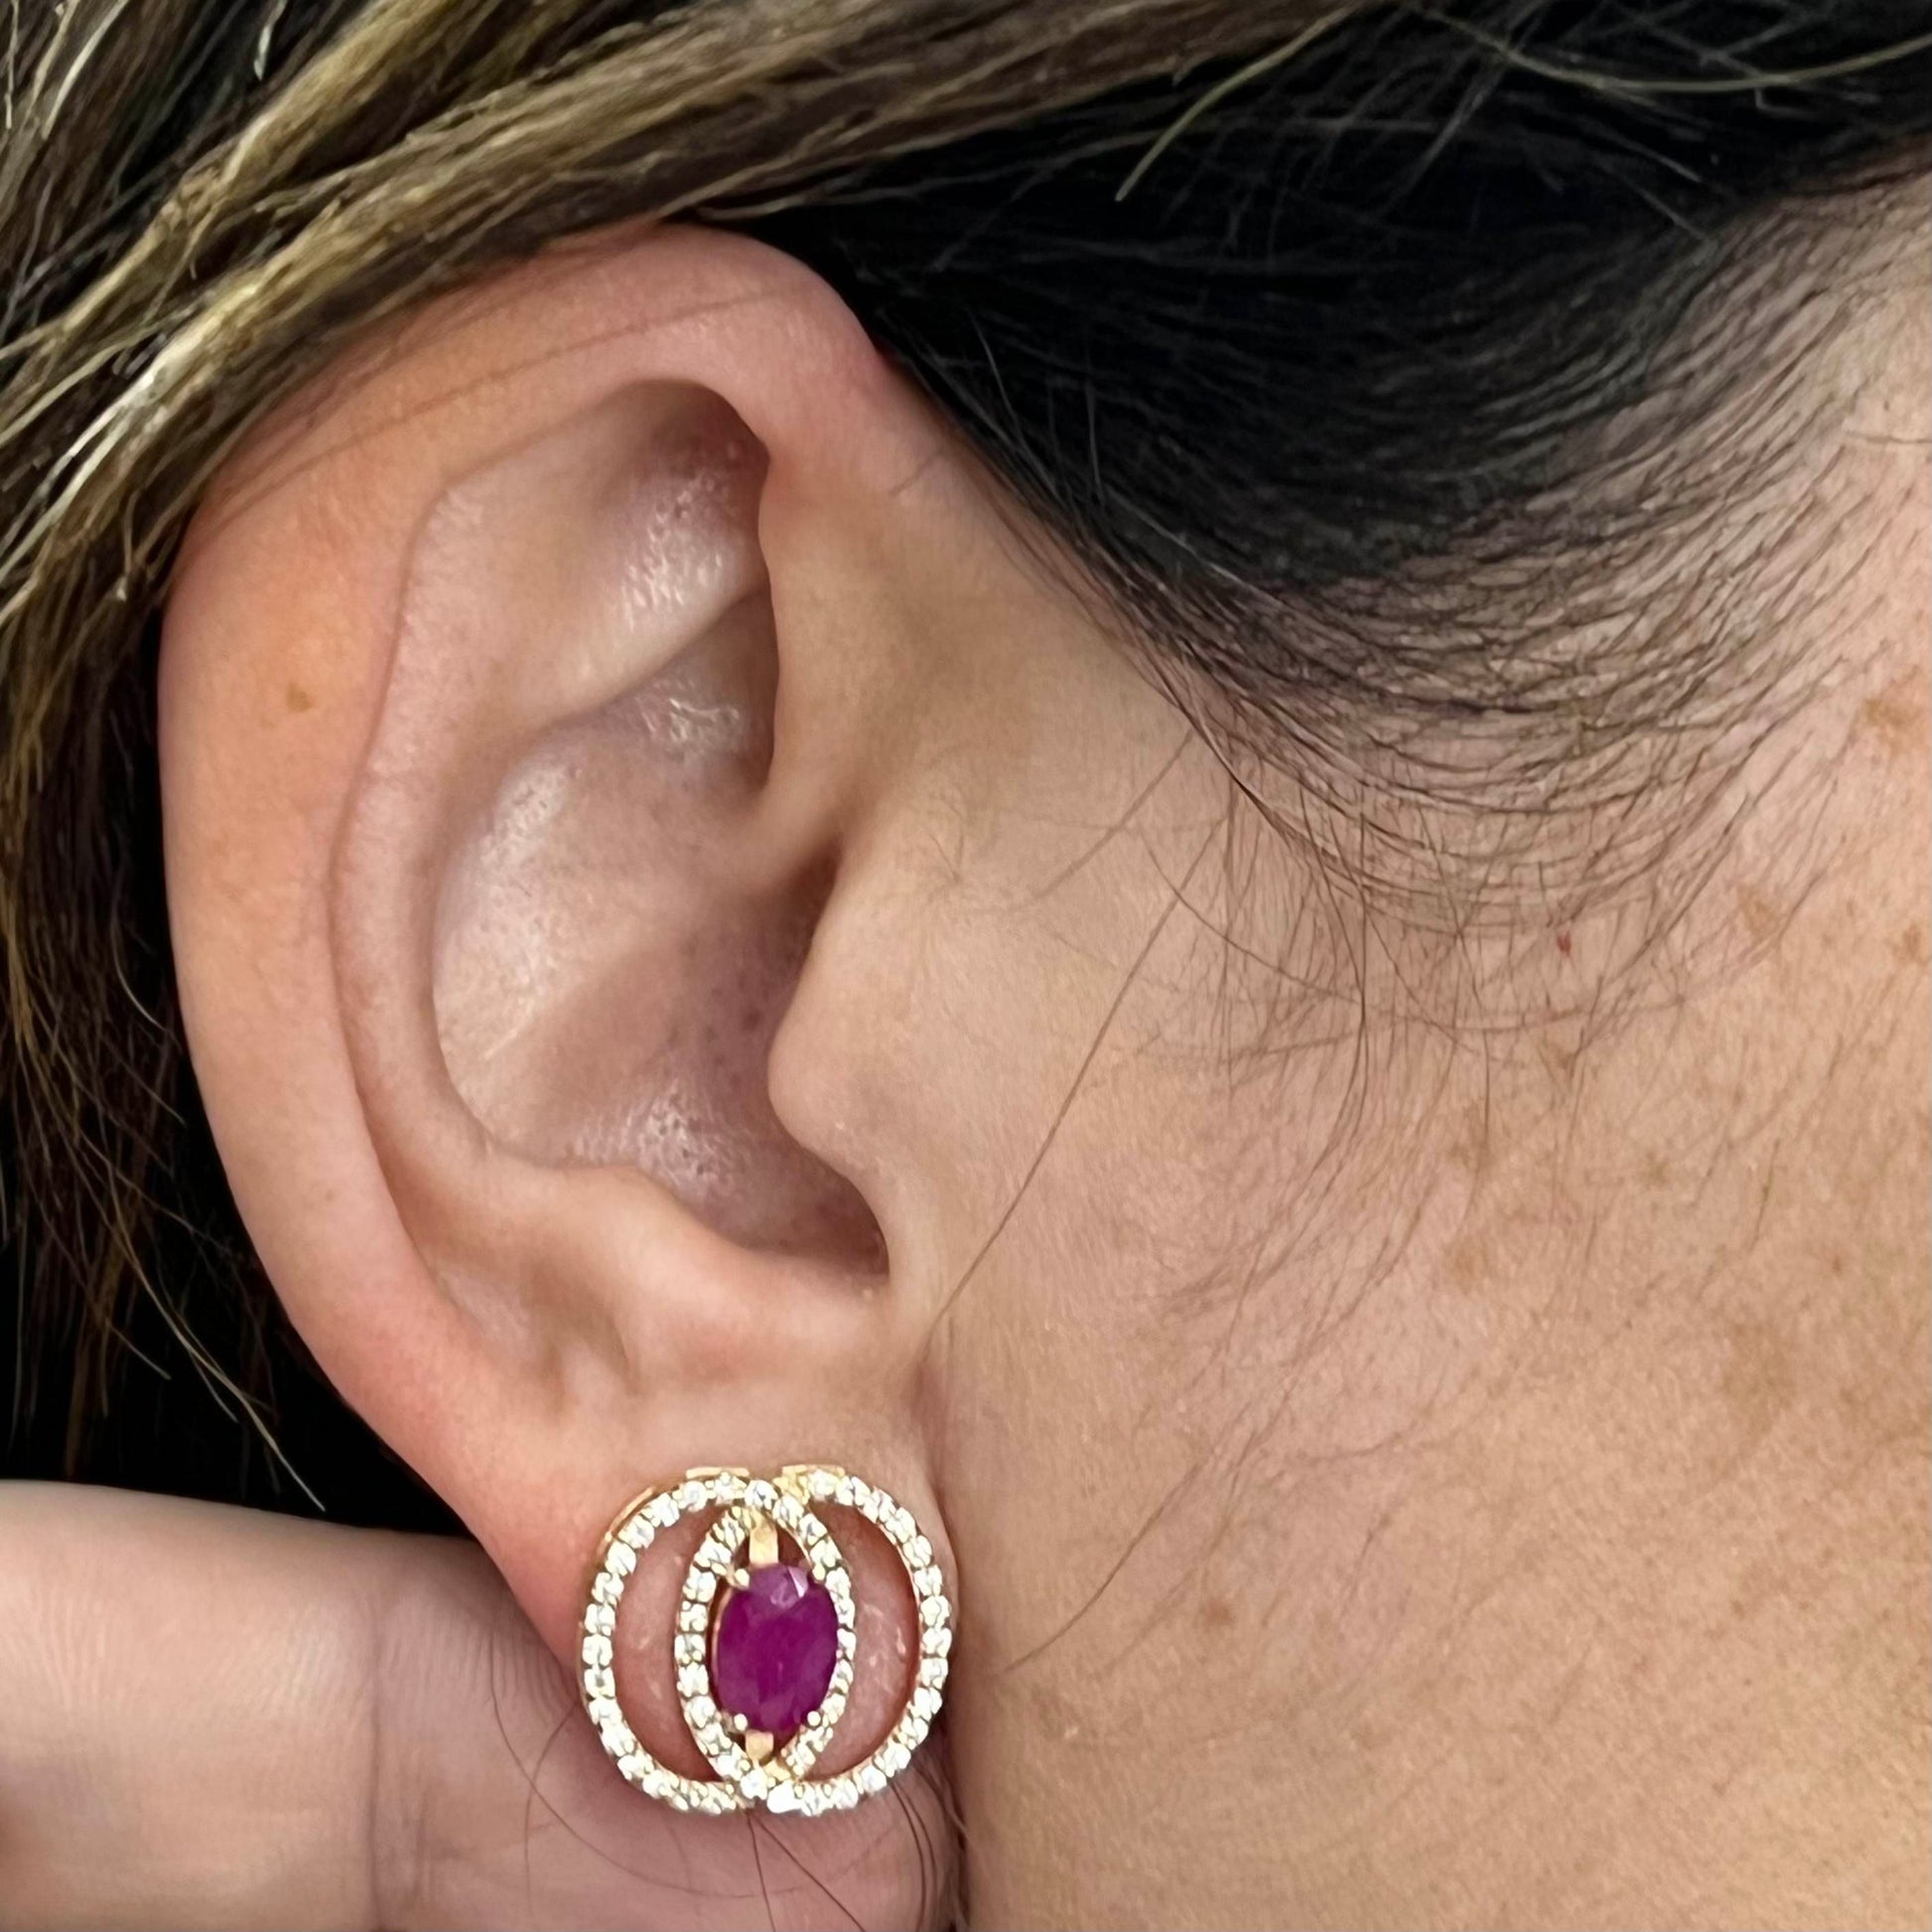 Diamond Ruby Stud Earrings 14k Yellow Gold 2.41 TCW Certified $5,950 018661 - Certified Fine Jewelry